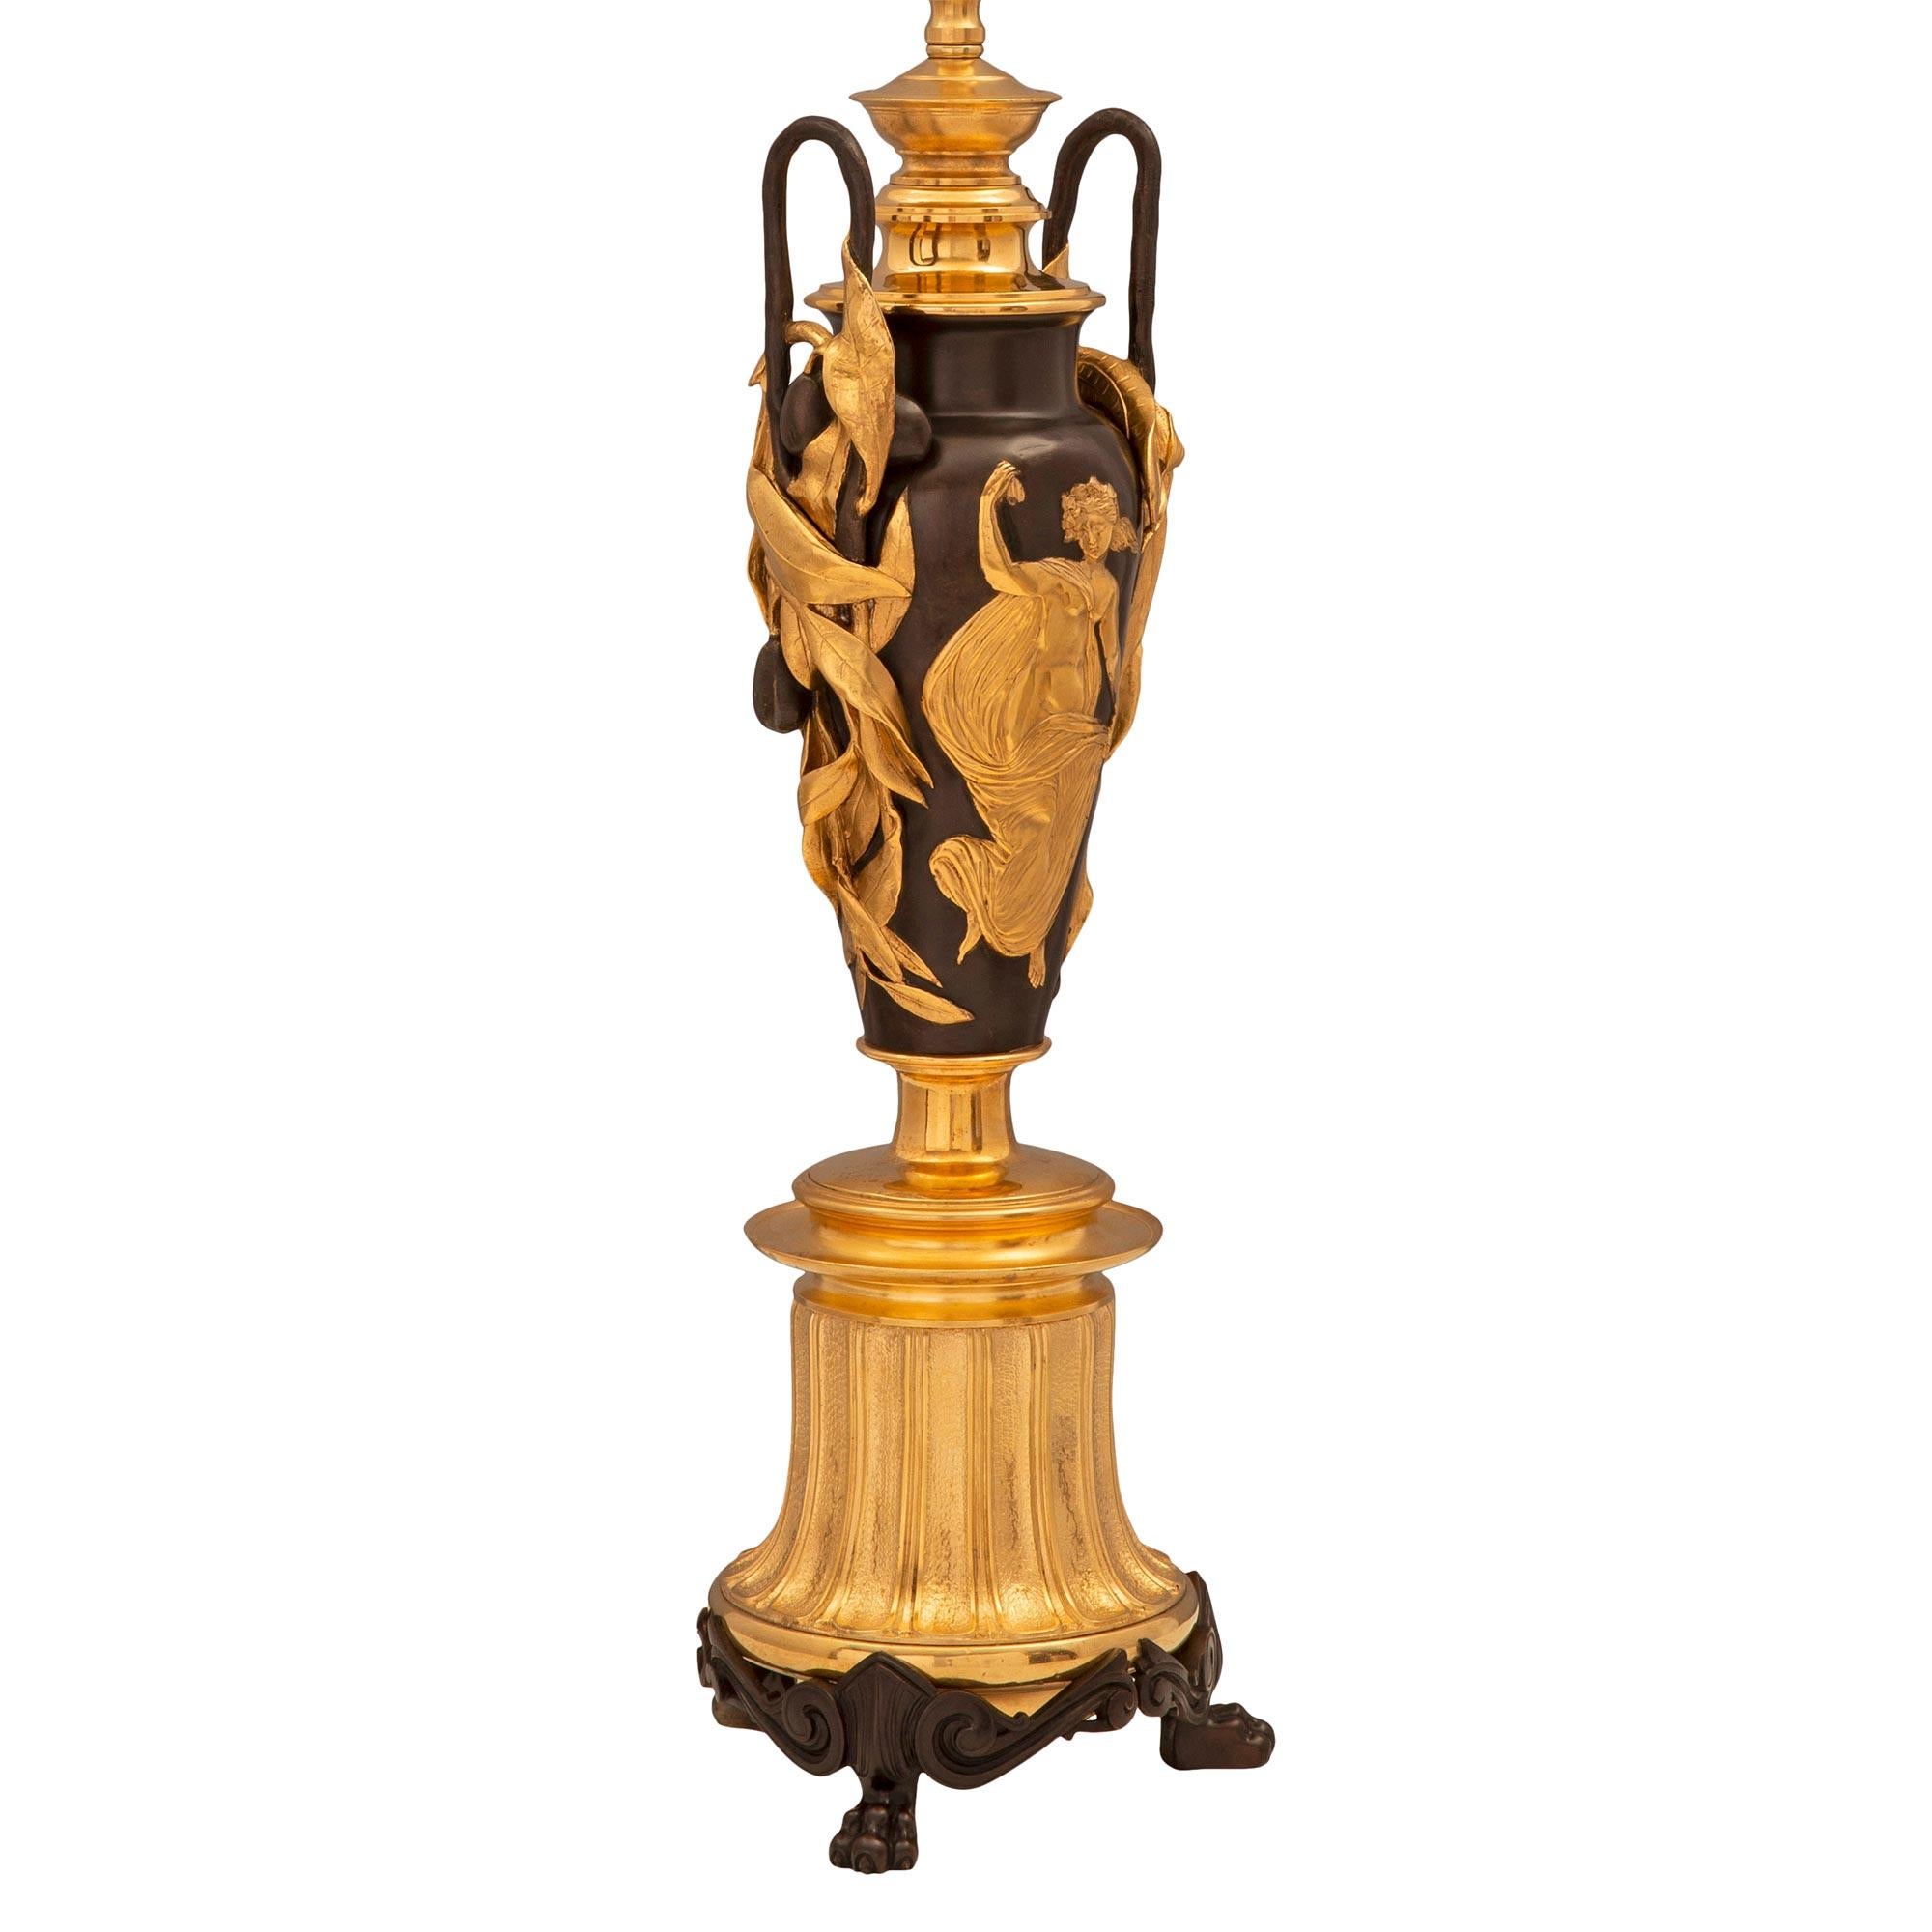 Une remarquable paire de lampes françaises du 19ème siècle de style Renaissance en bronze patiné et bronze doré. Chaque lampe est surélevée par trois beaux pieds en bronze patiné avec des motifs feuillus en volutes, sous une base cannelée légèrement